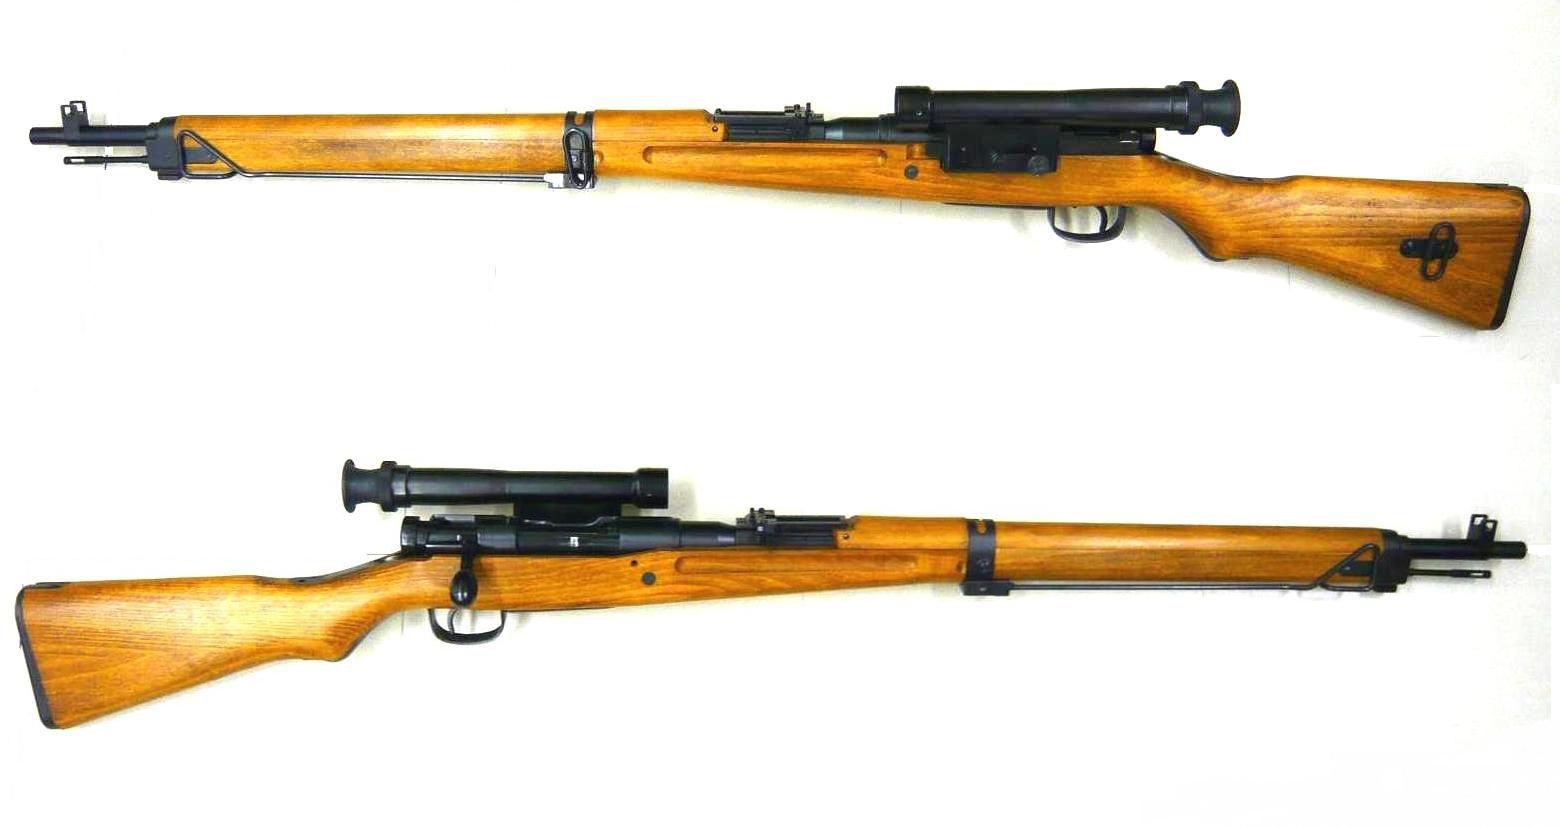 世界上有三款射程最远的狙击枪,分别是巴雷特m82a1,tac